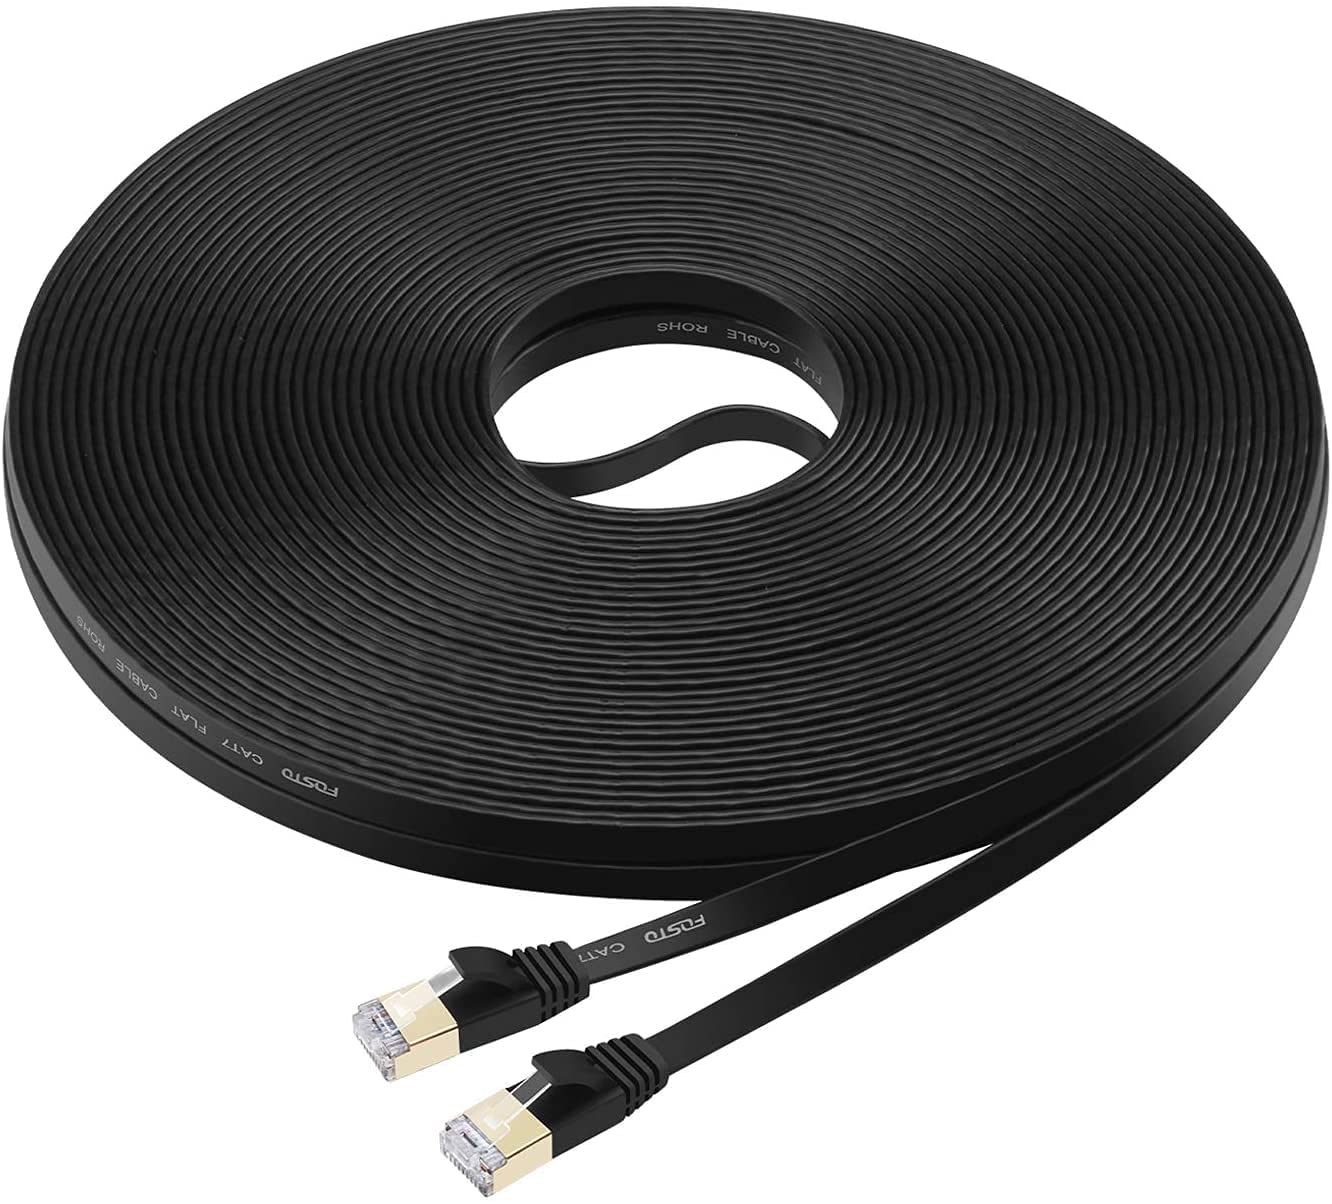 Veetop Cable Ethernet 2m, Rj45 Cat 7 Plat Haute Vitesse avec